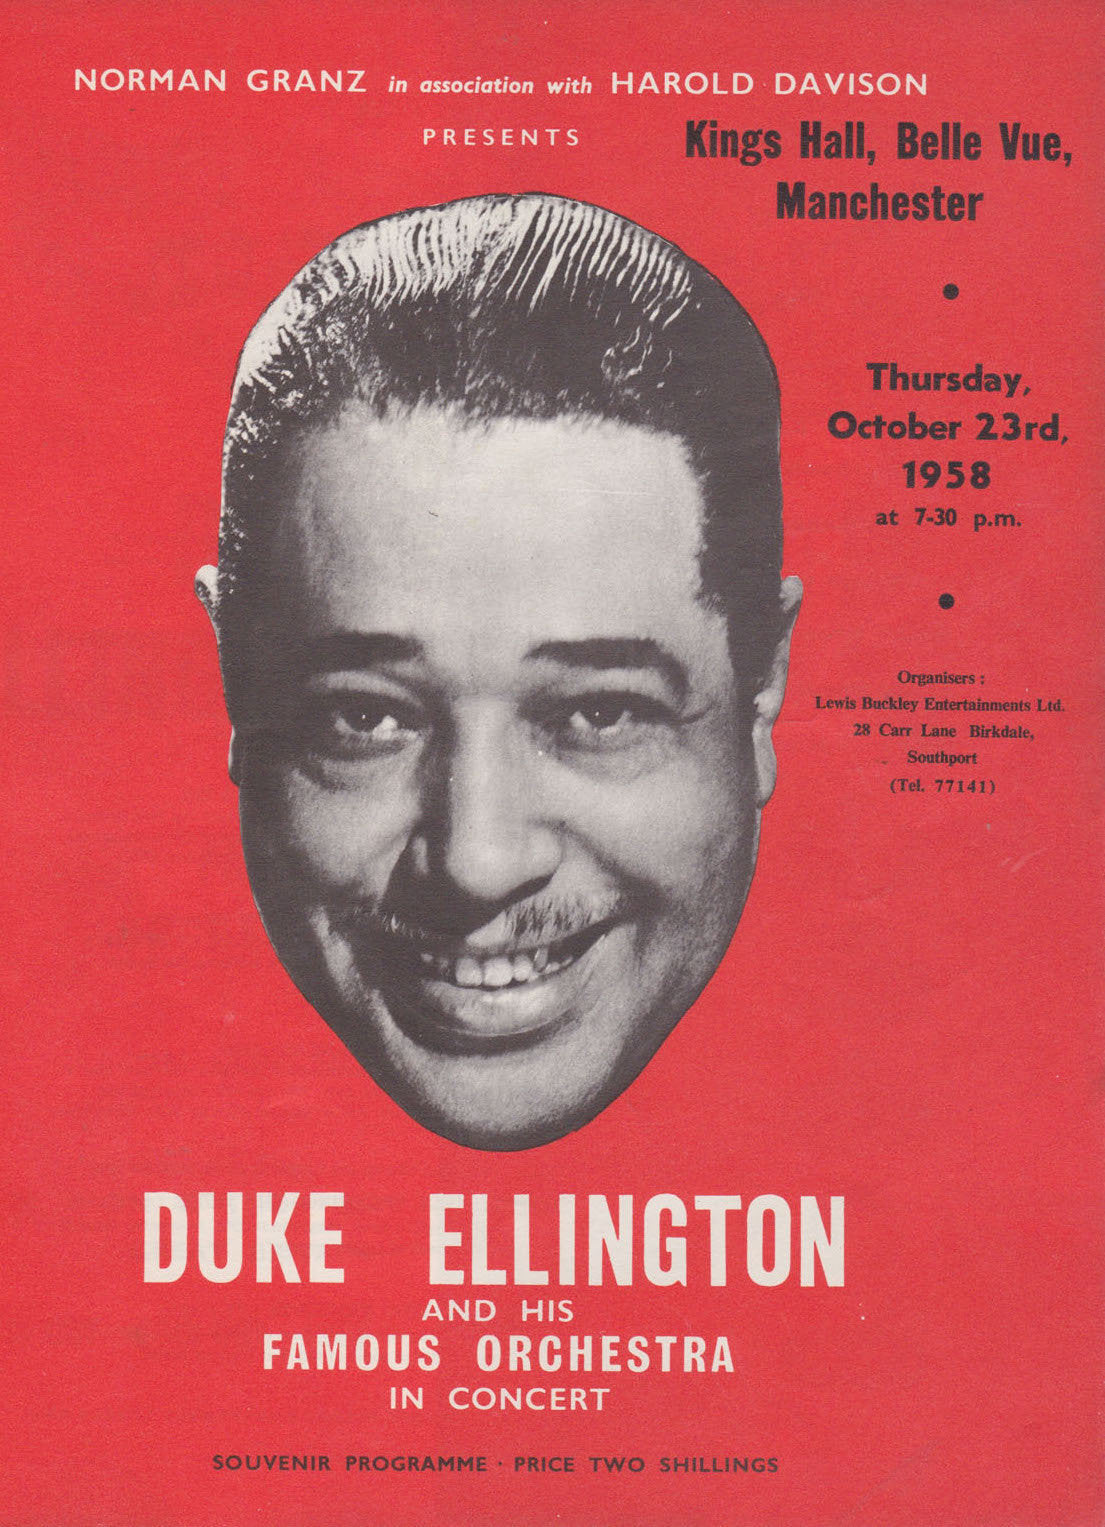 0782 Vintage Music Art Poster - Duke Ellington Belle Vue Manchester